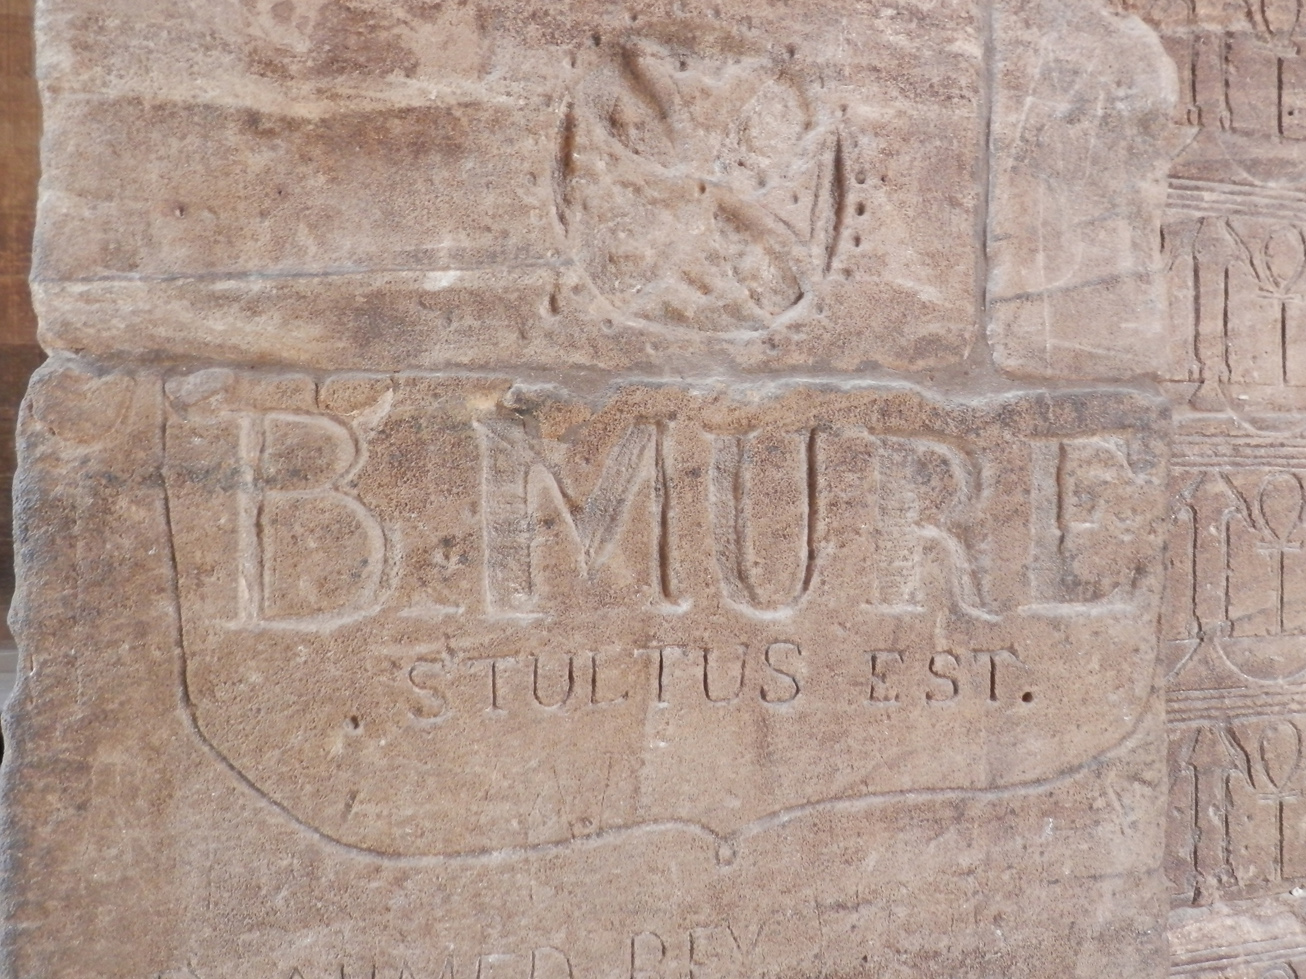 Alors qu'on parle beaucoup en ce moment d'un Chinois qui a tagué le temple de Louxor, voici un graffiti disant "B. Mure est un idiot", en latin.